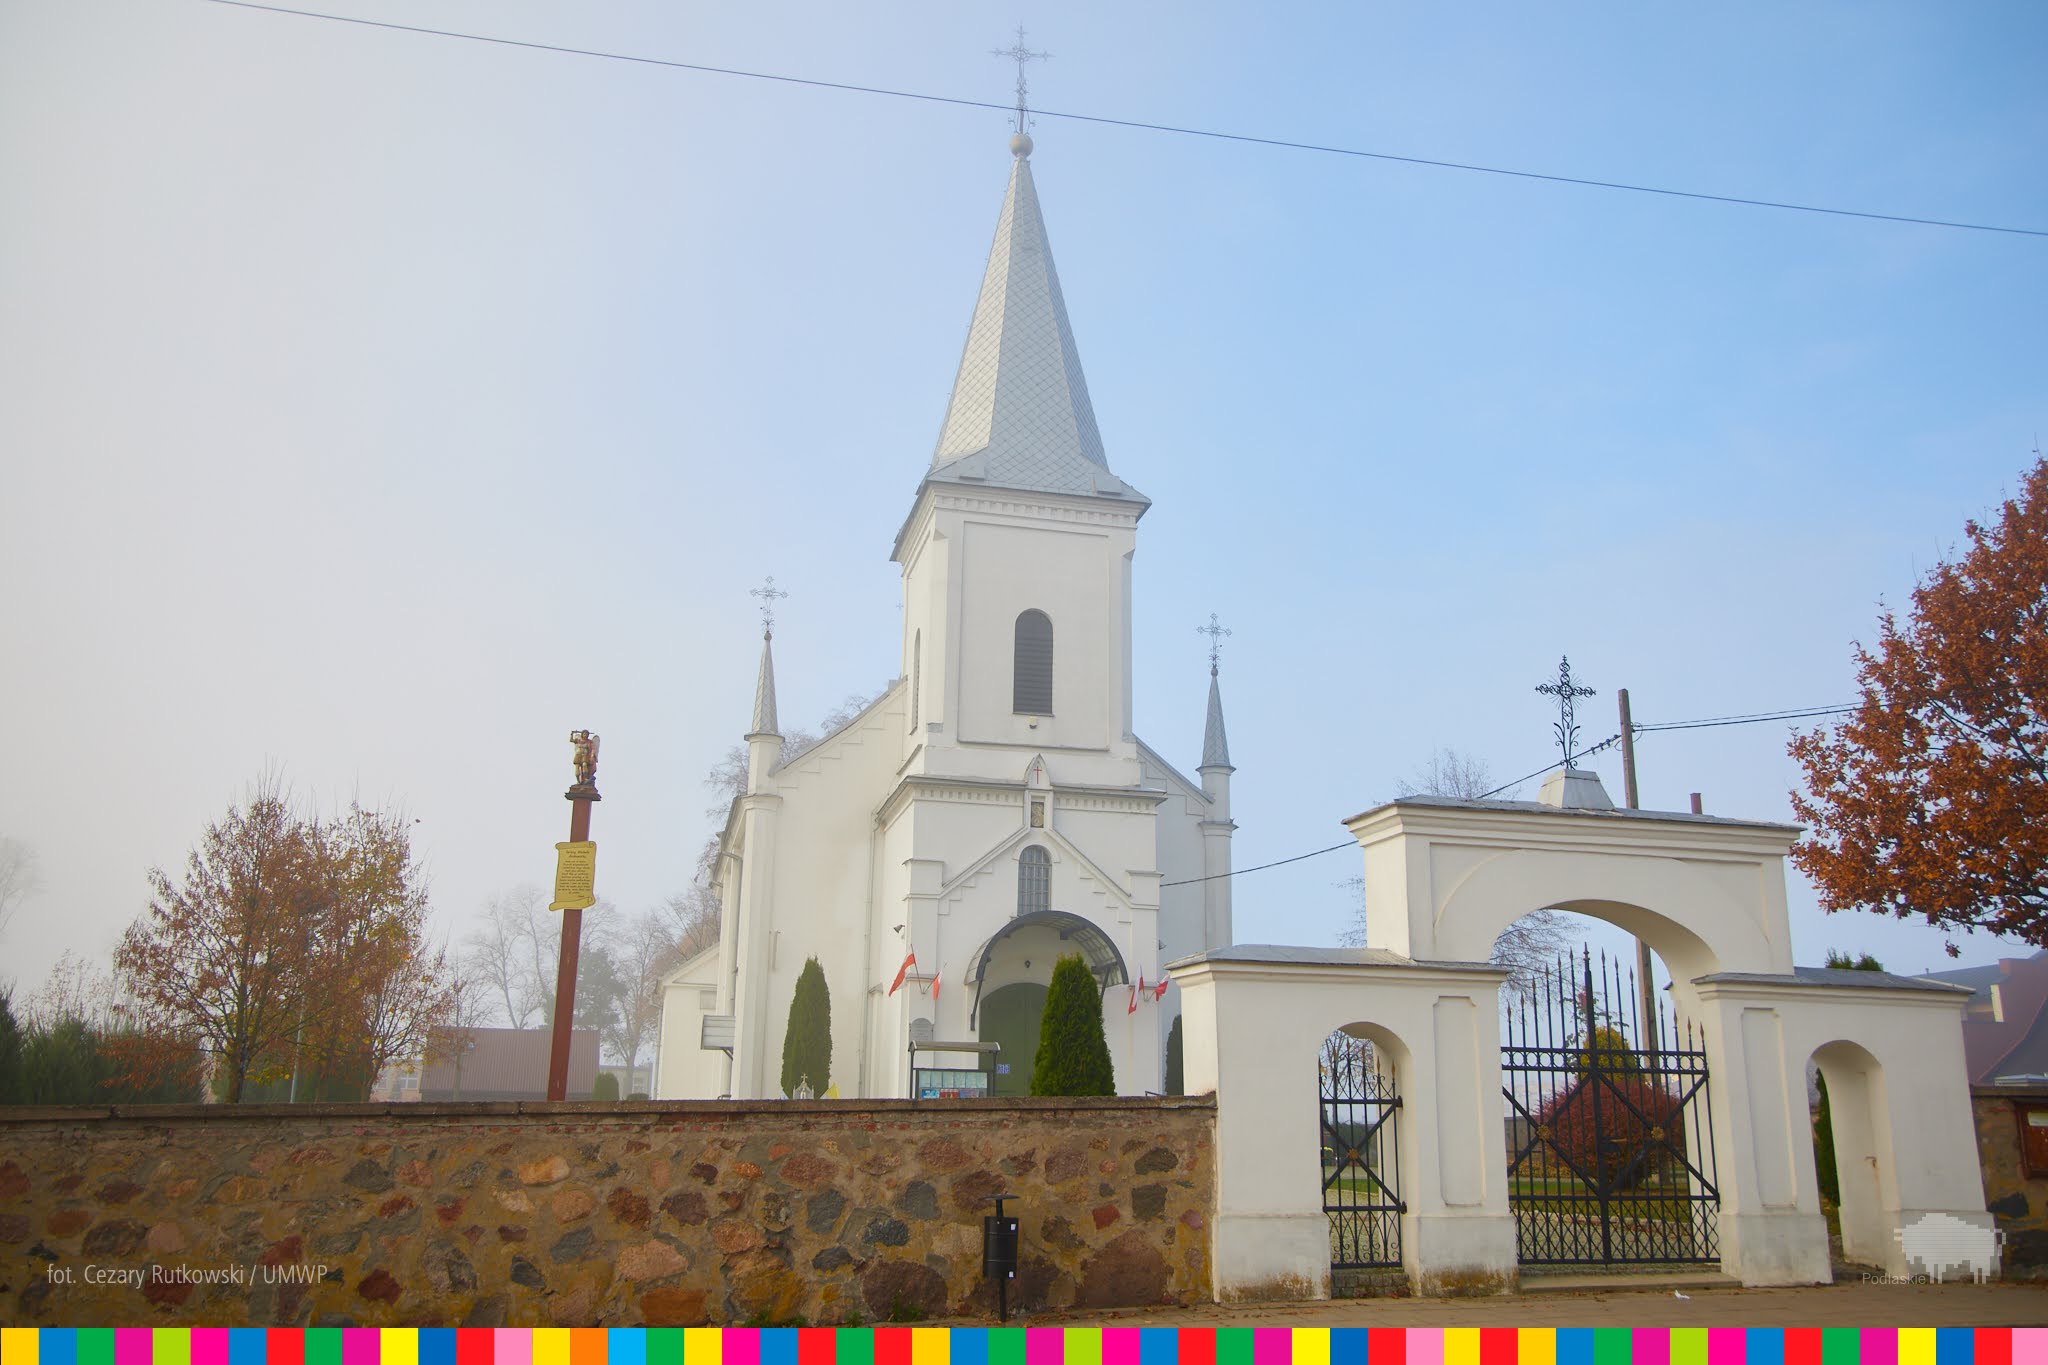 Kościół Przemienienia Pańskiego w Wasilkowie